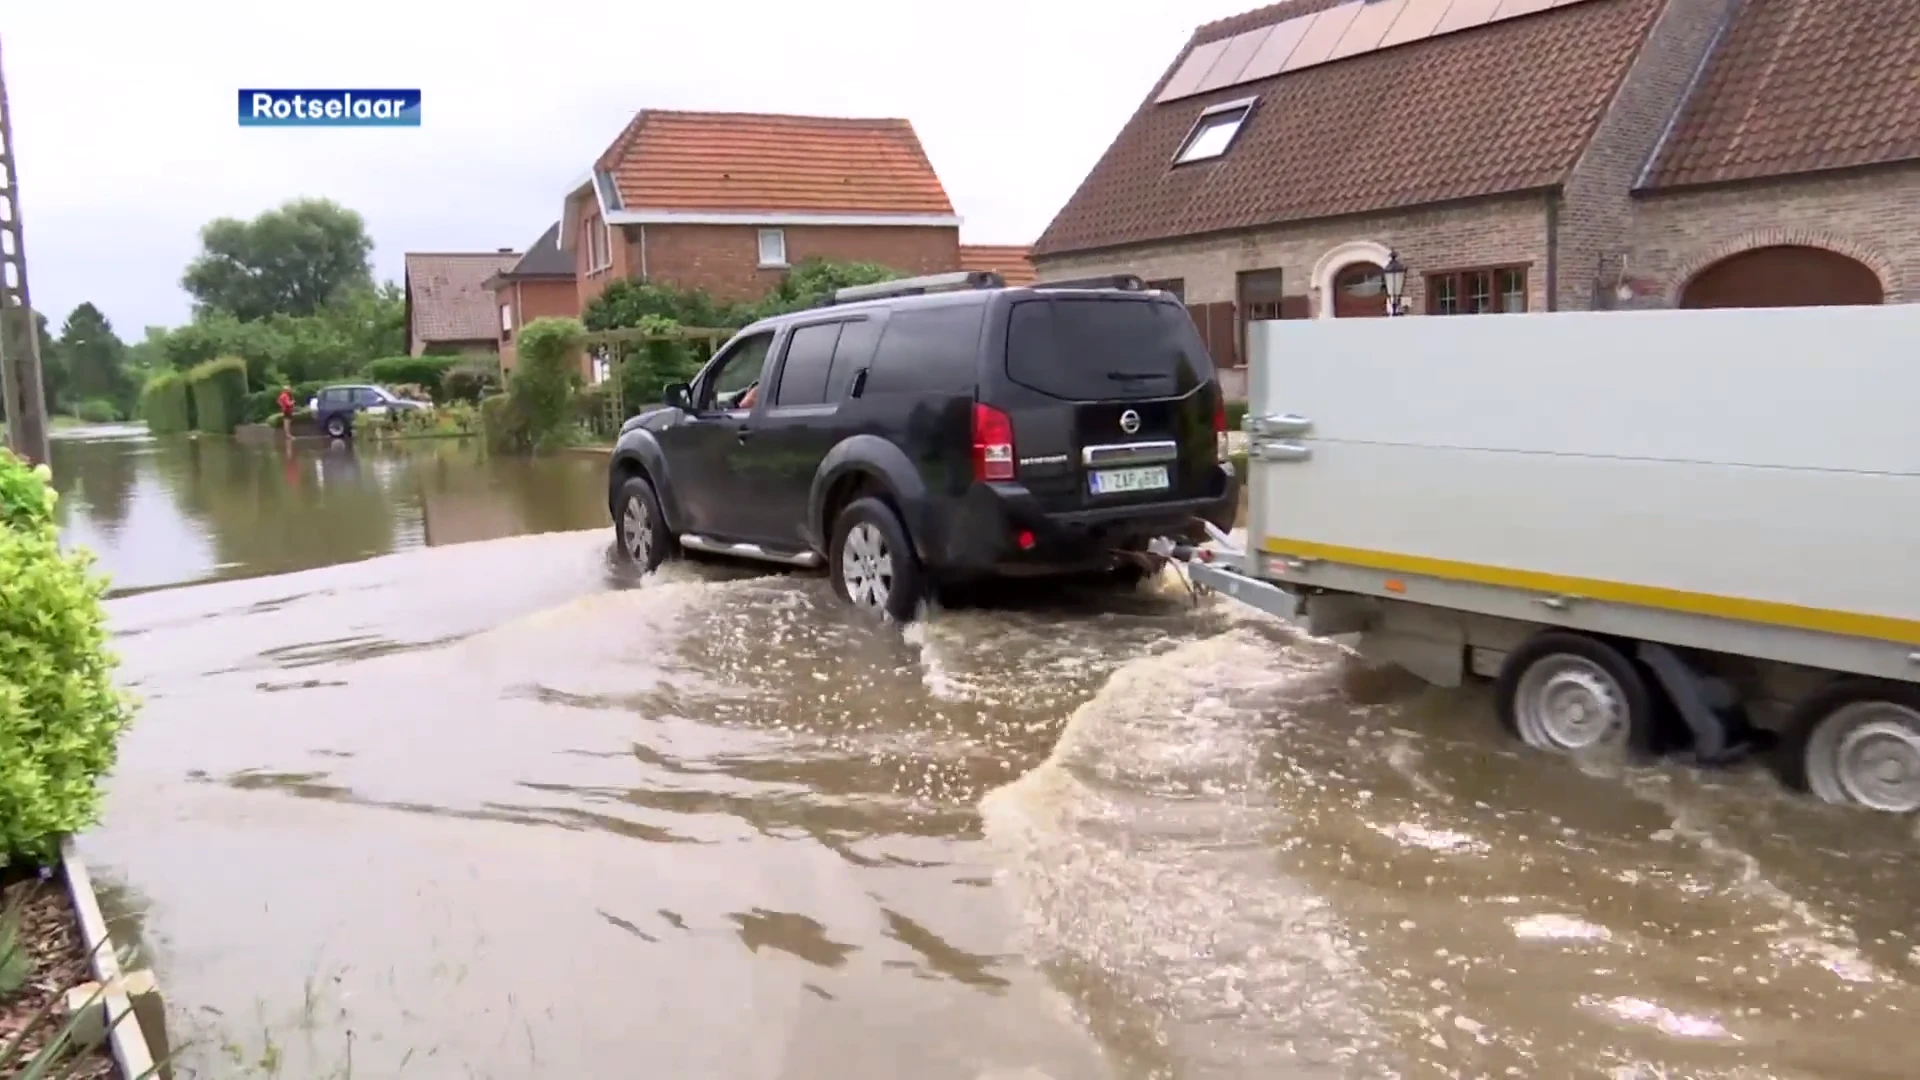 Veel verkeershinder in Rotselaar door wateroverlast afgelopen dagen